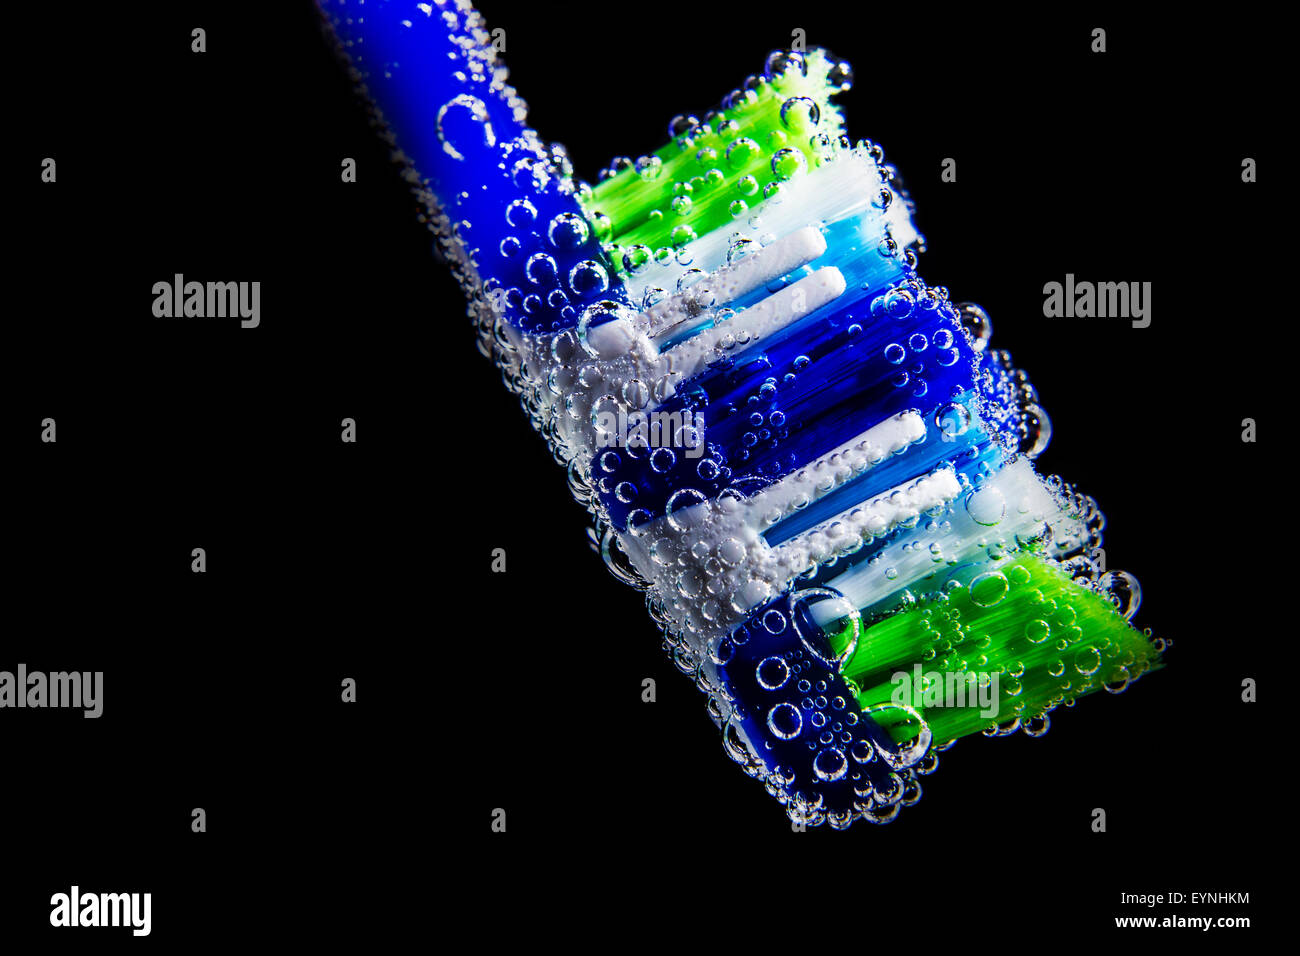 Cepillo de dientes con agua en el interior de la burbuja y aislado sobre fondo negro Foto de stock